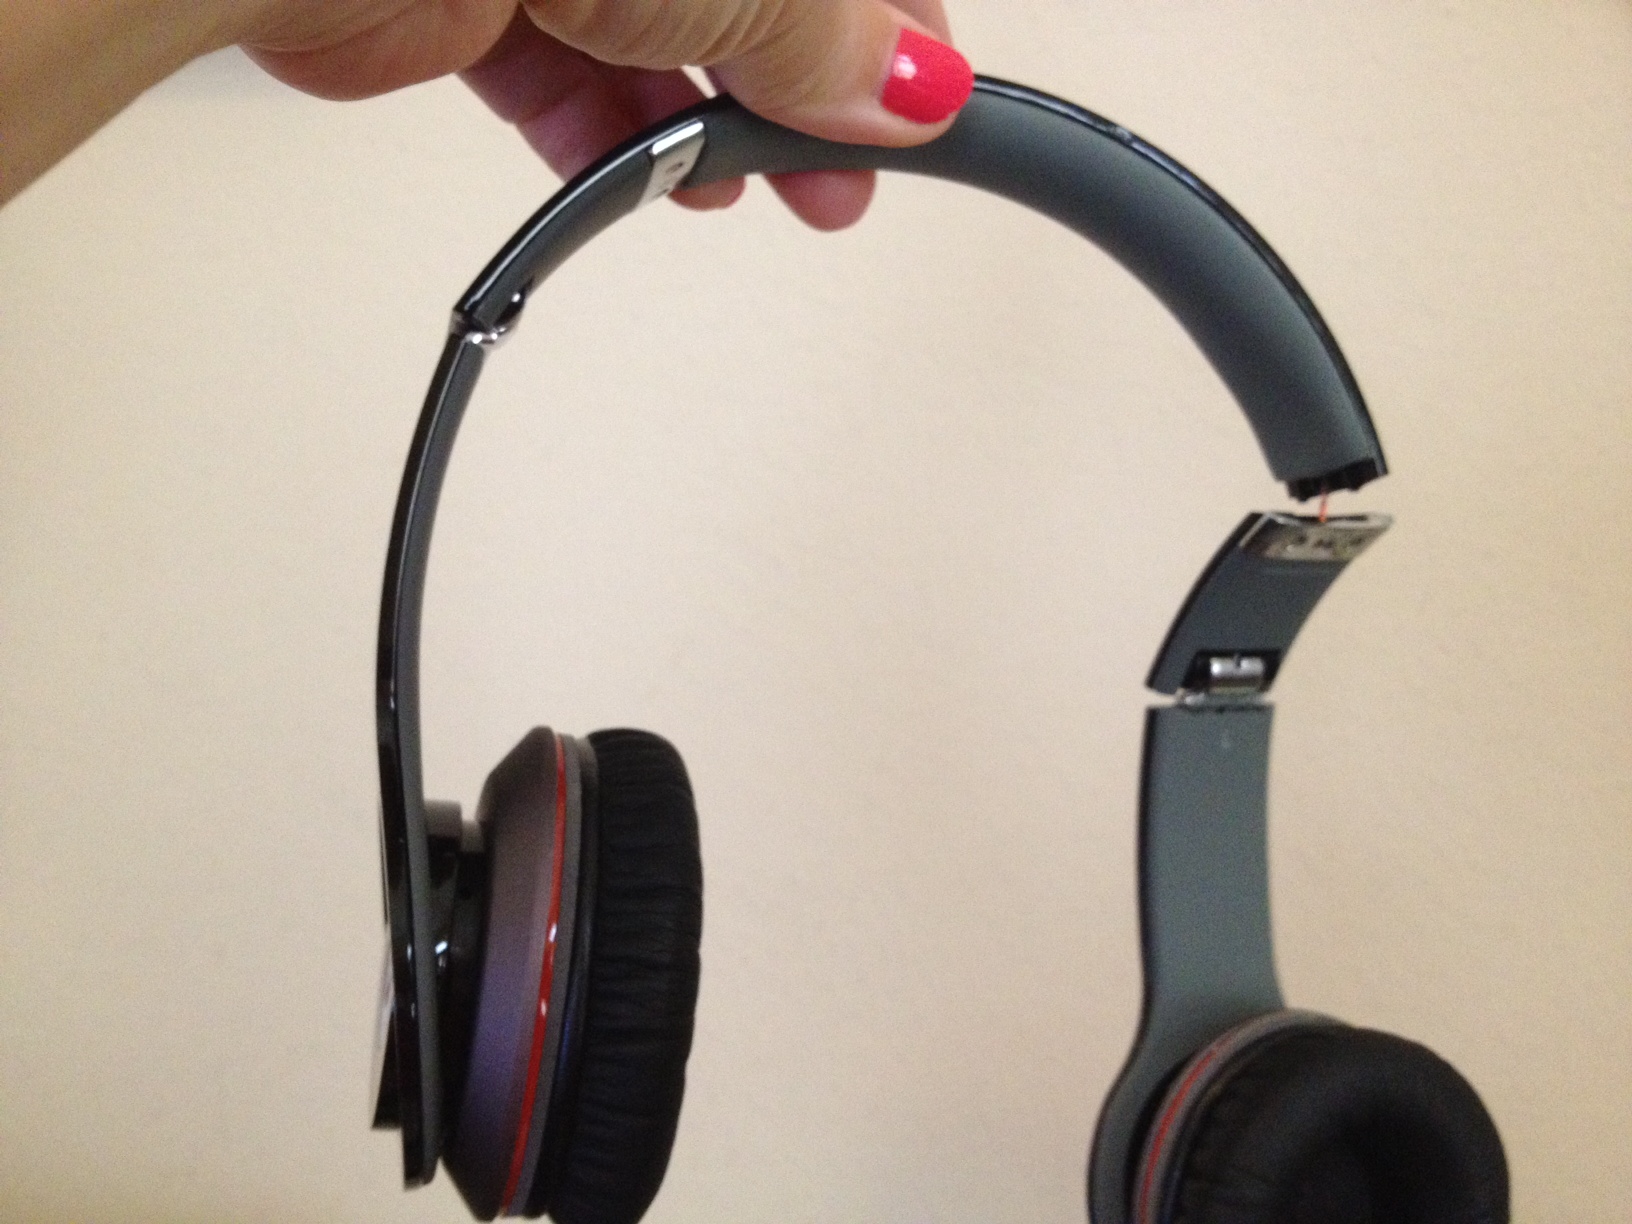 Beats by Dre Headphone Repair - iPhone 